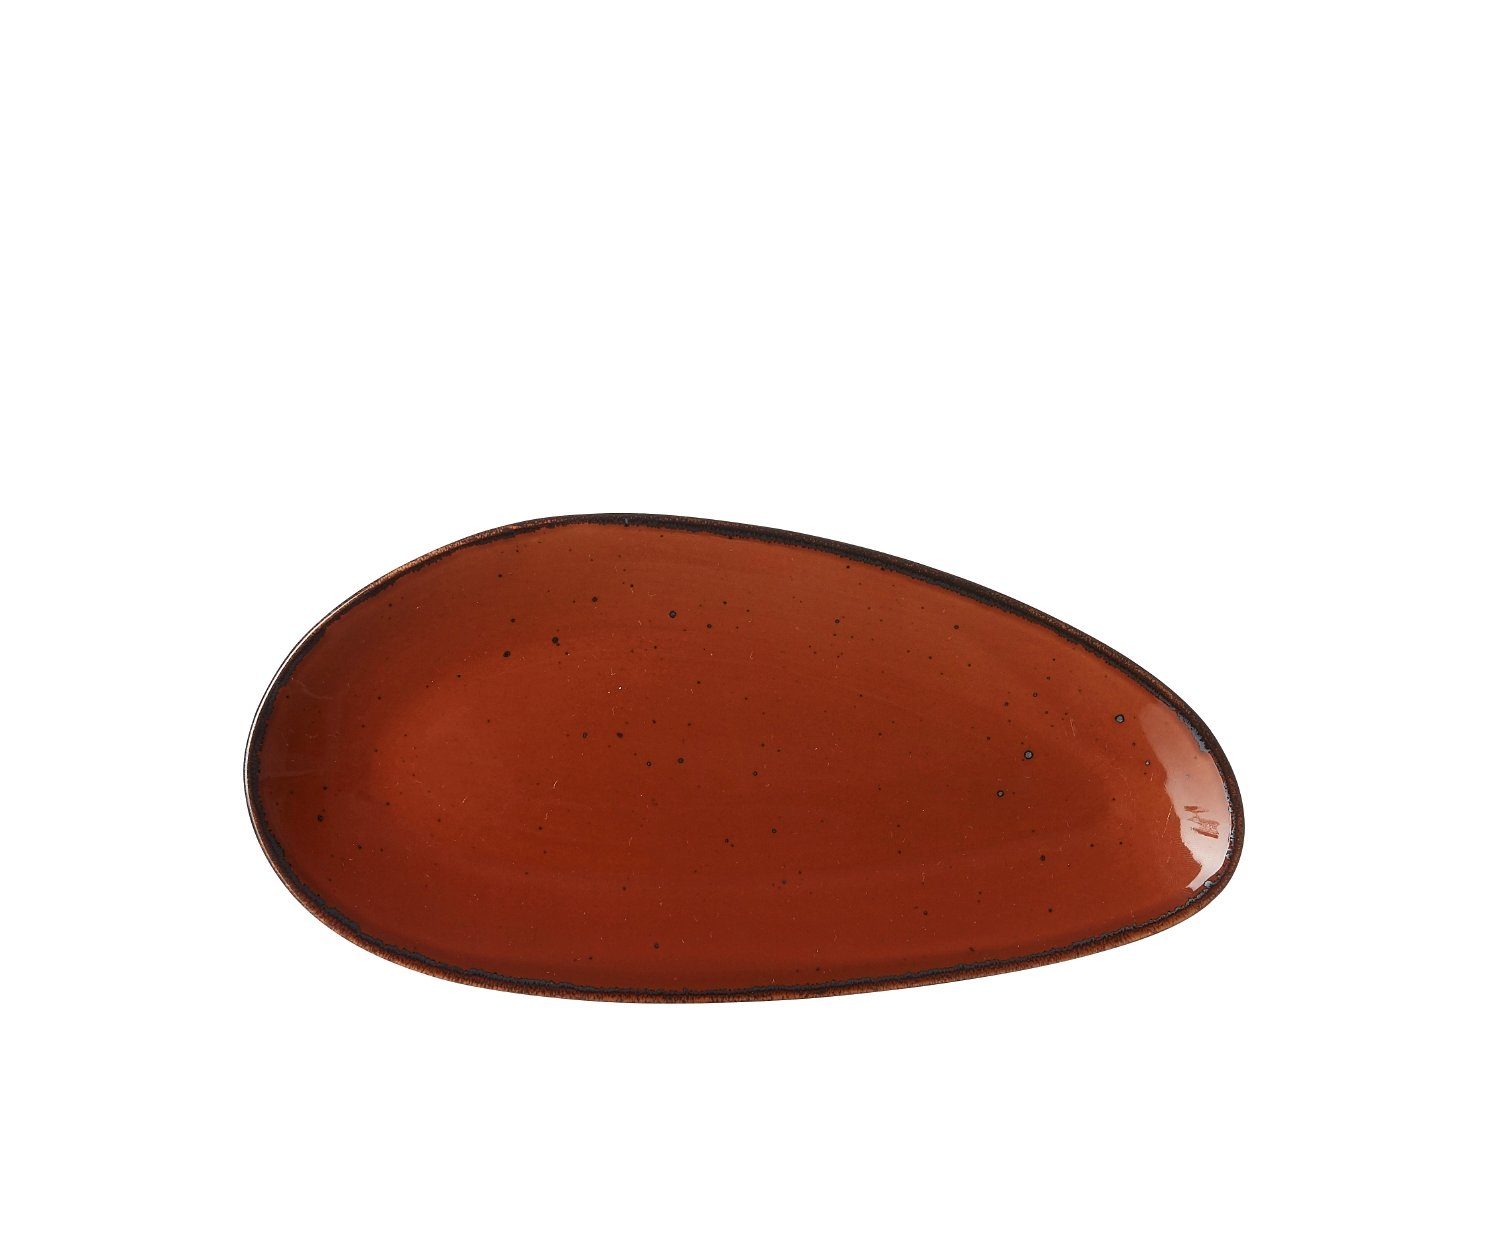 Ritzenhoff & Breker Servierplatte Taste marron Platte oval 25,5x12,5cm